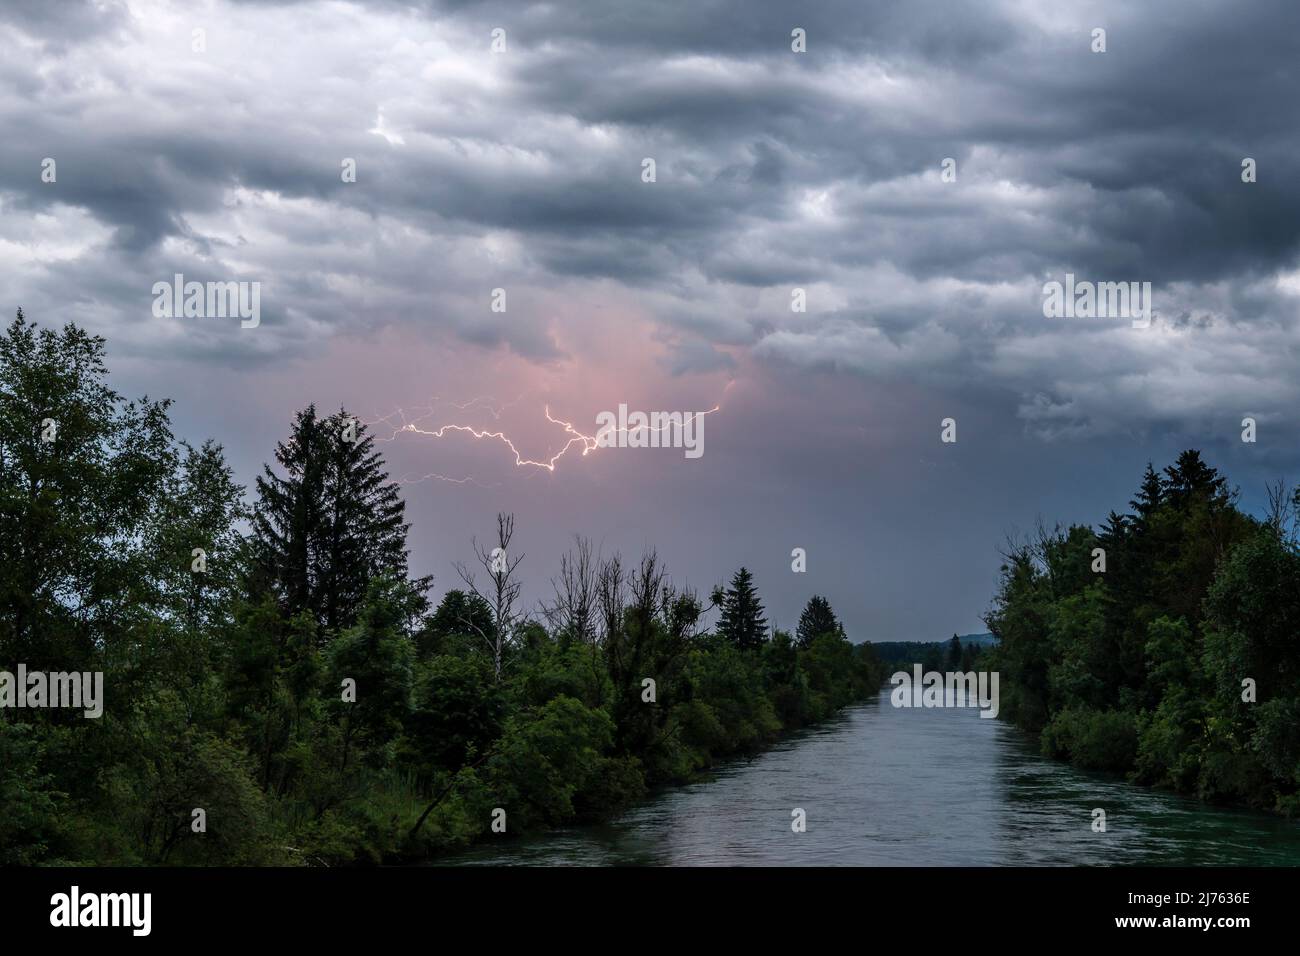 Lampi nel cielo sopra il Loisach, un noto fiume bavarese vicino a Kochel am See, tra gli altri luoghi. Le nuvole spesse e il corso del fiume, selvaggiamente soprastato, contribuiscono all'atmosfera cupa. Foto Stock